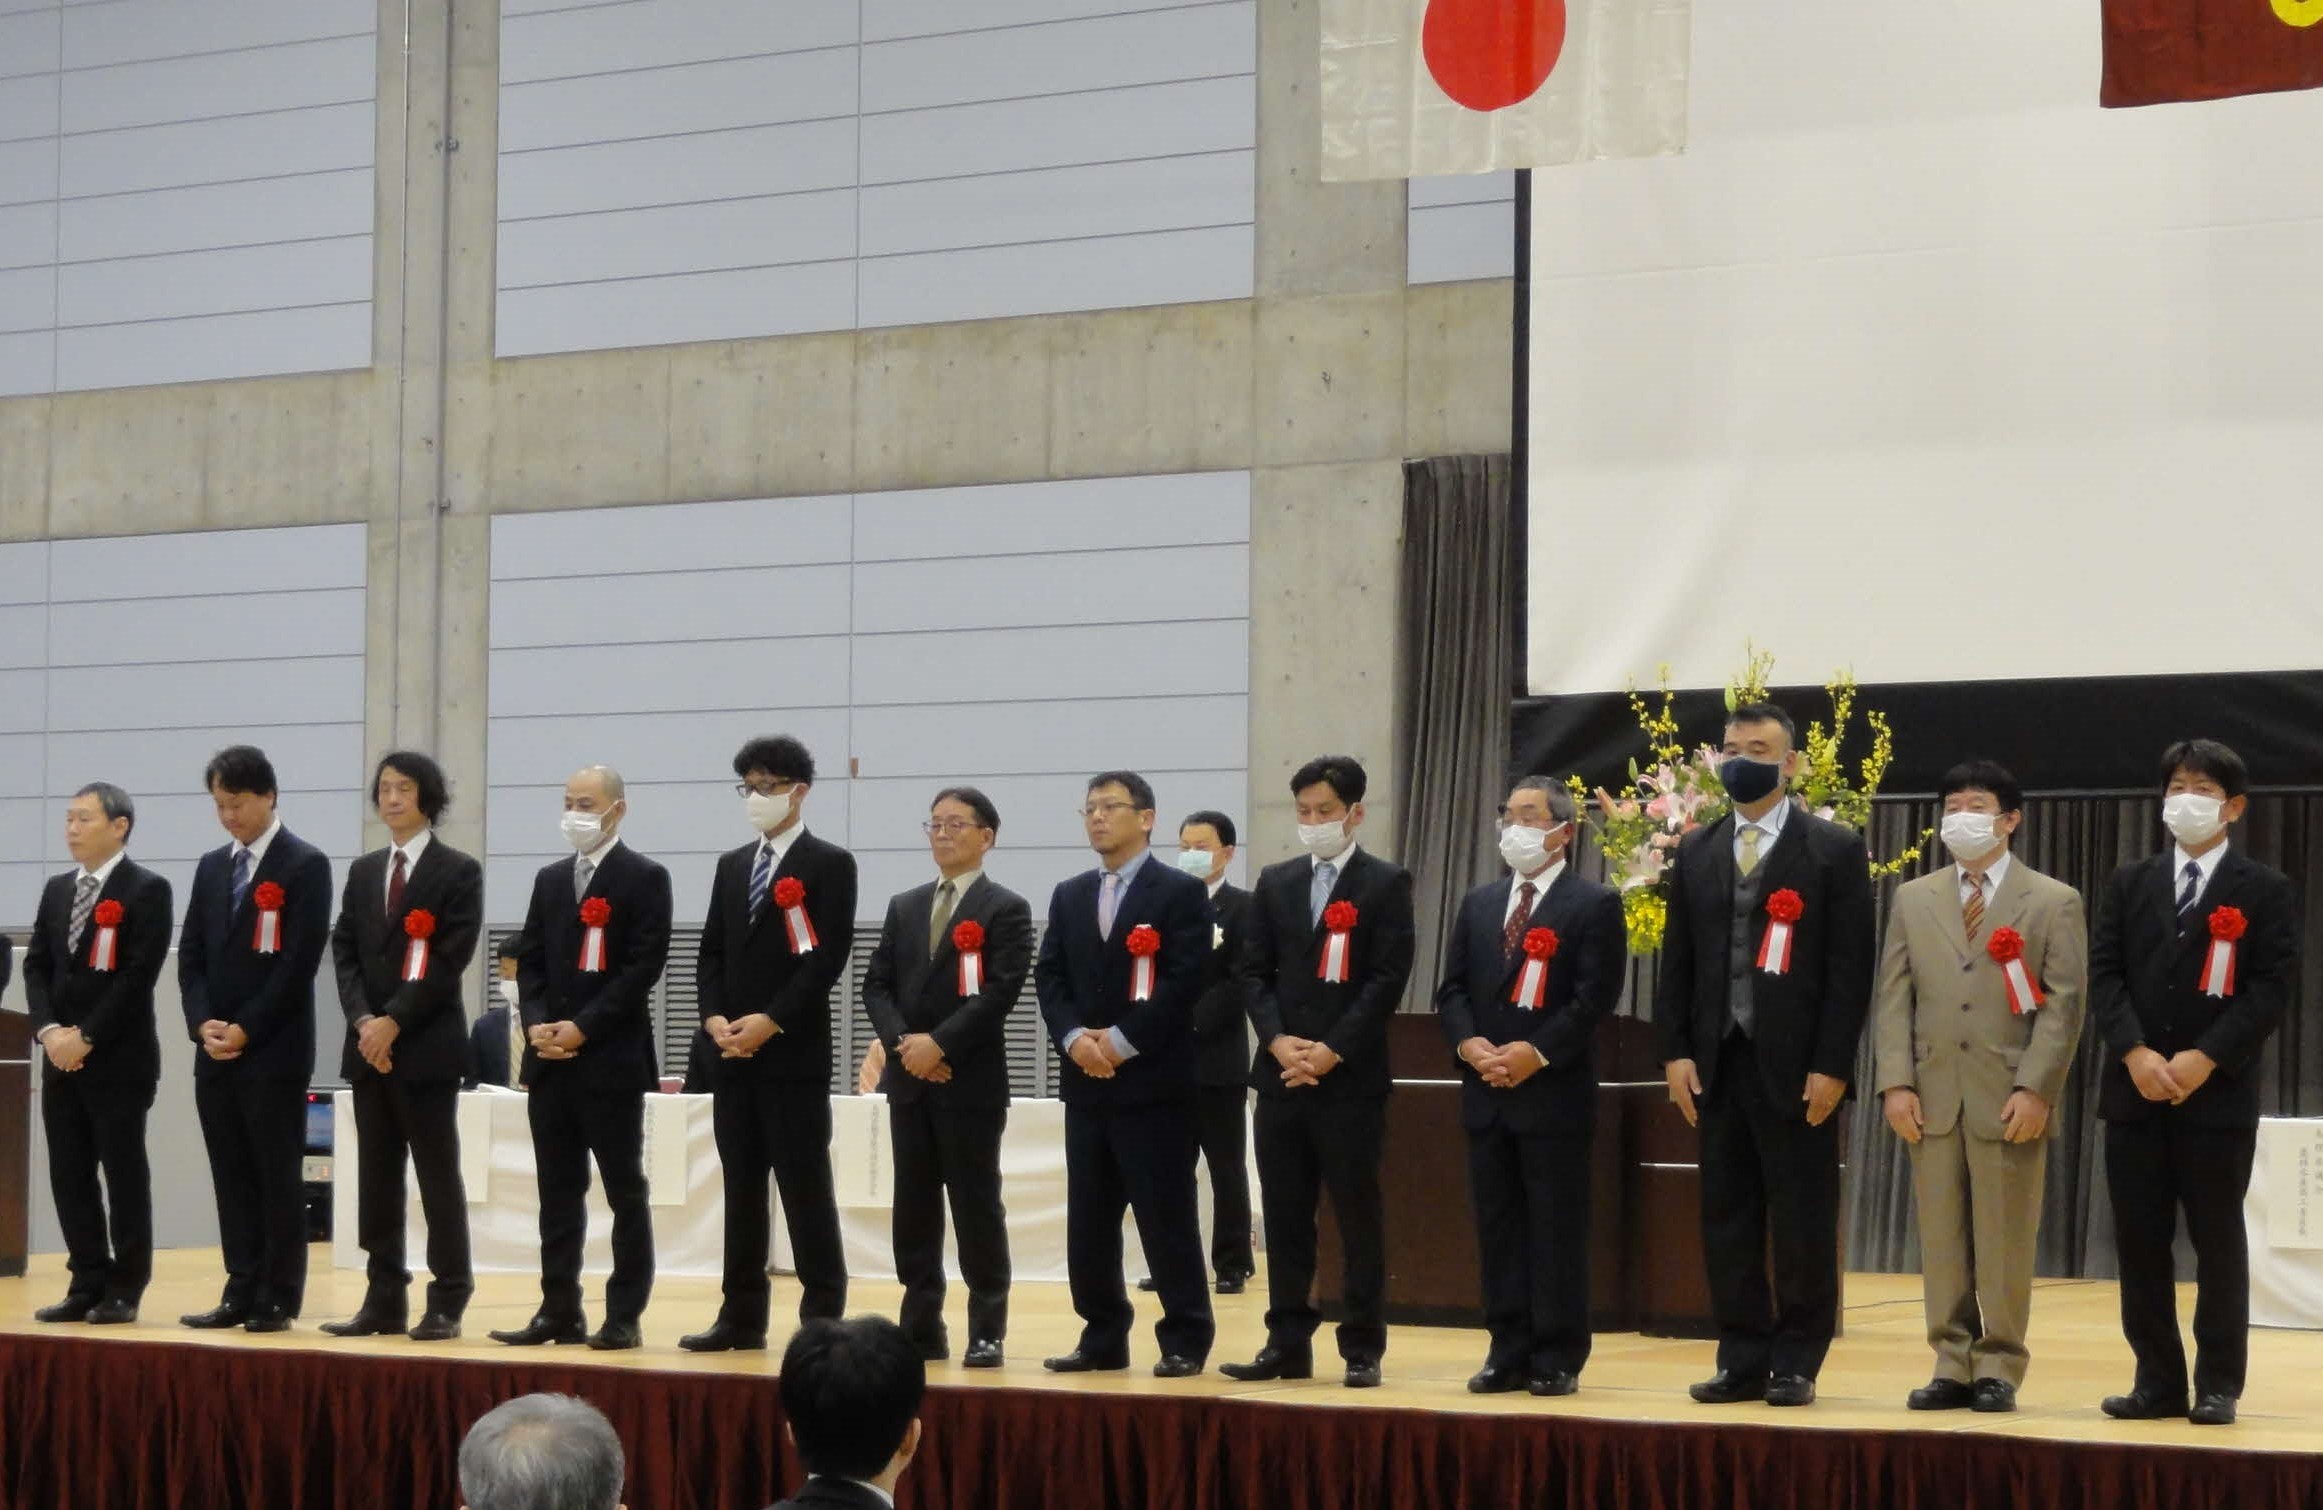 卓越技能者島根県知事表彰の受賞者の功績紹介のようす